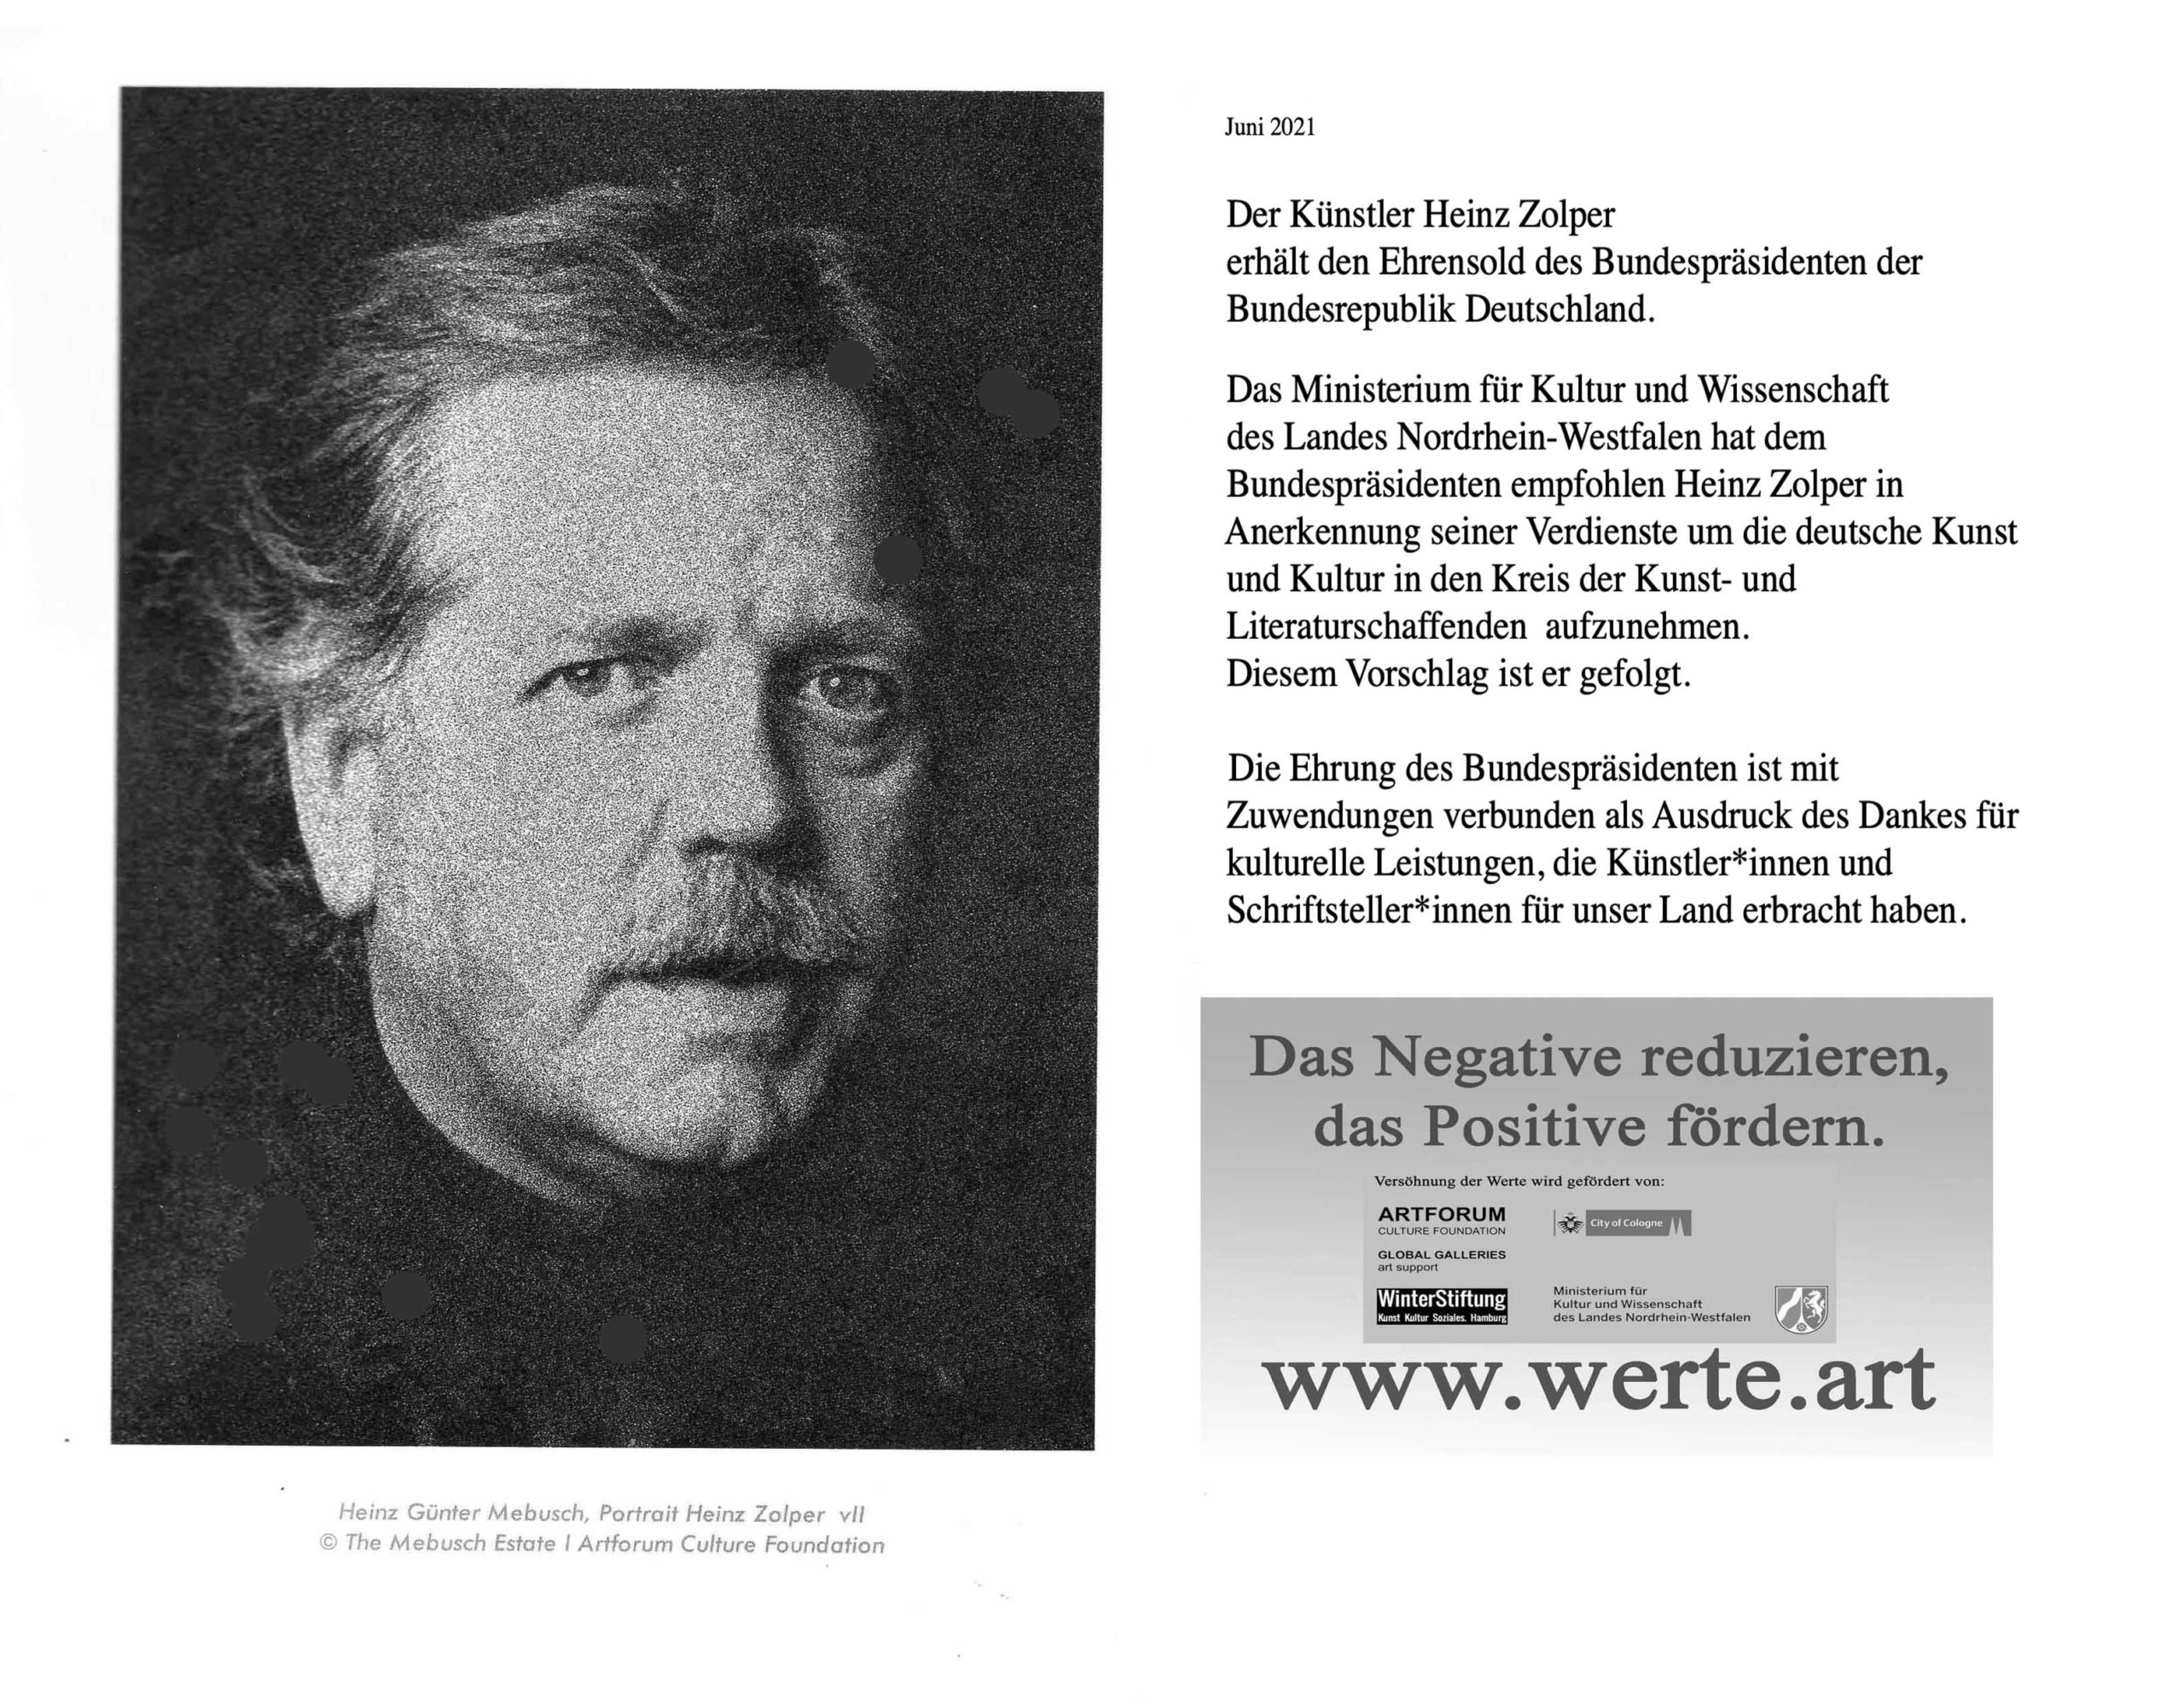 German artist Heinz Zolper honoured by Federal President